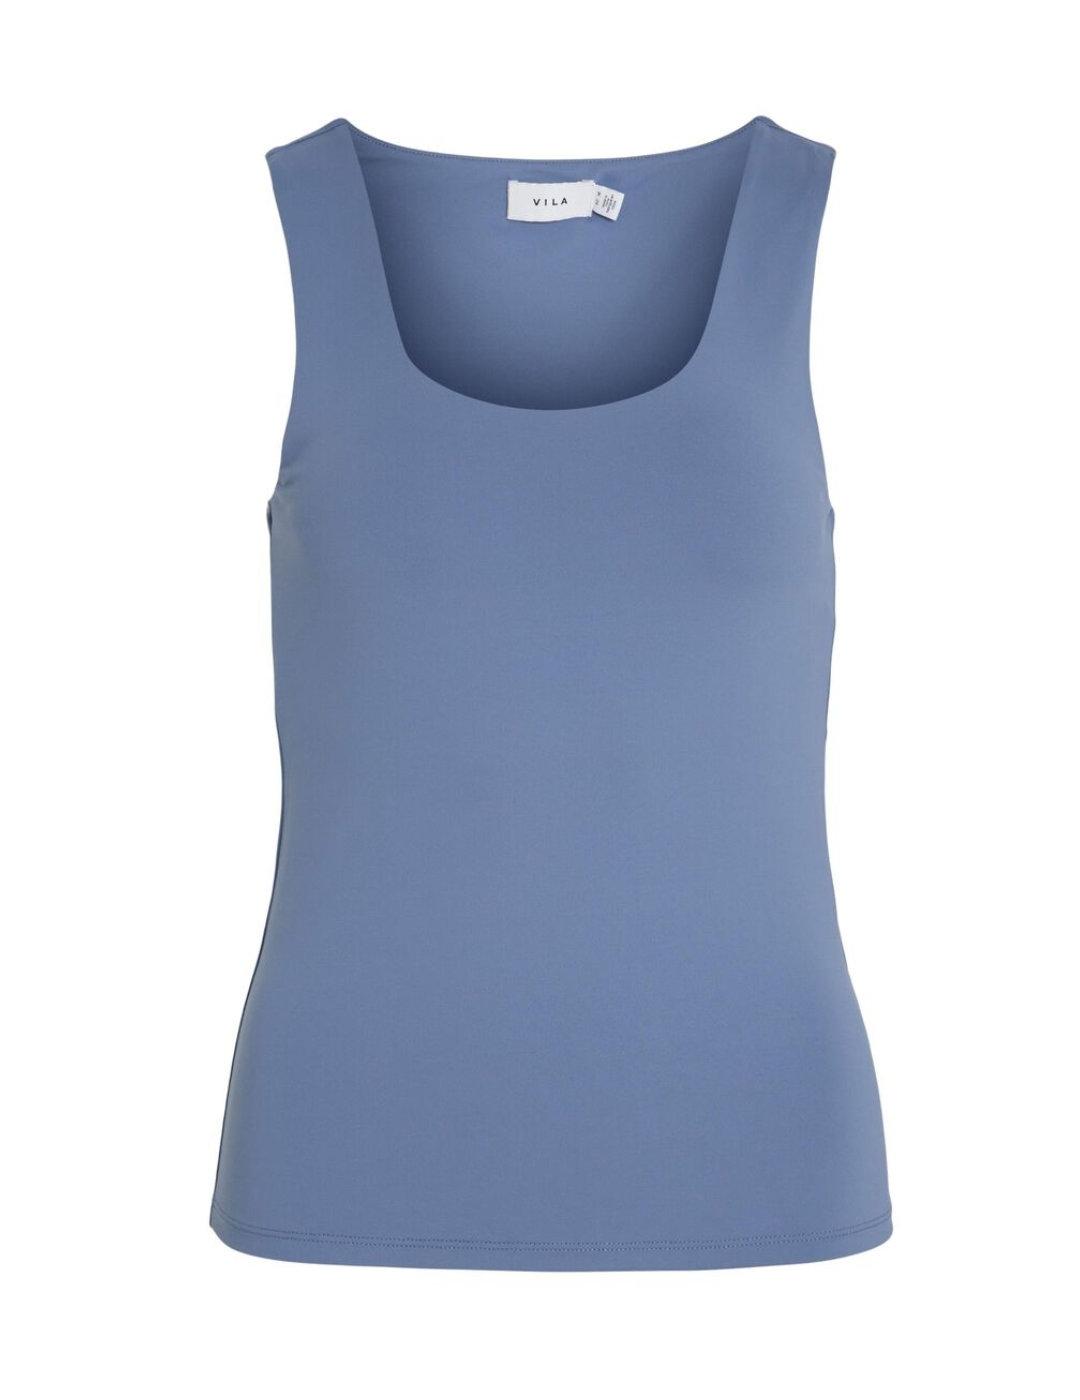 Camiseta Vila Kenza color azul de tirante ancho para mujer